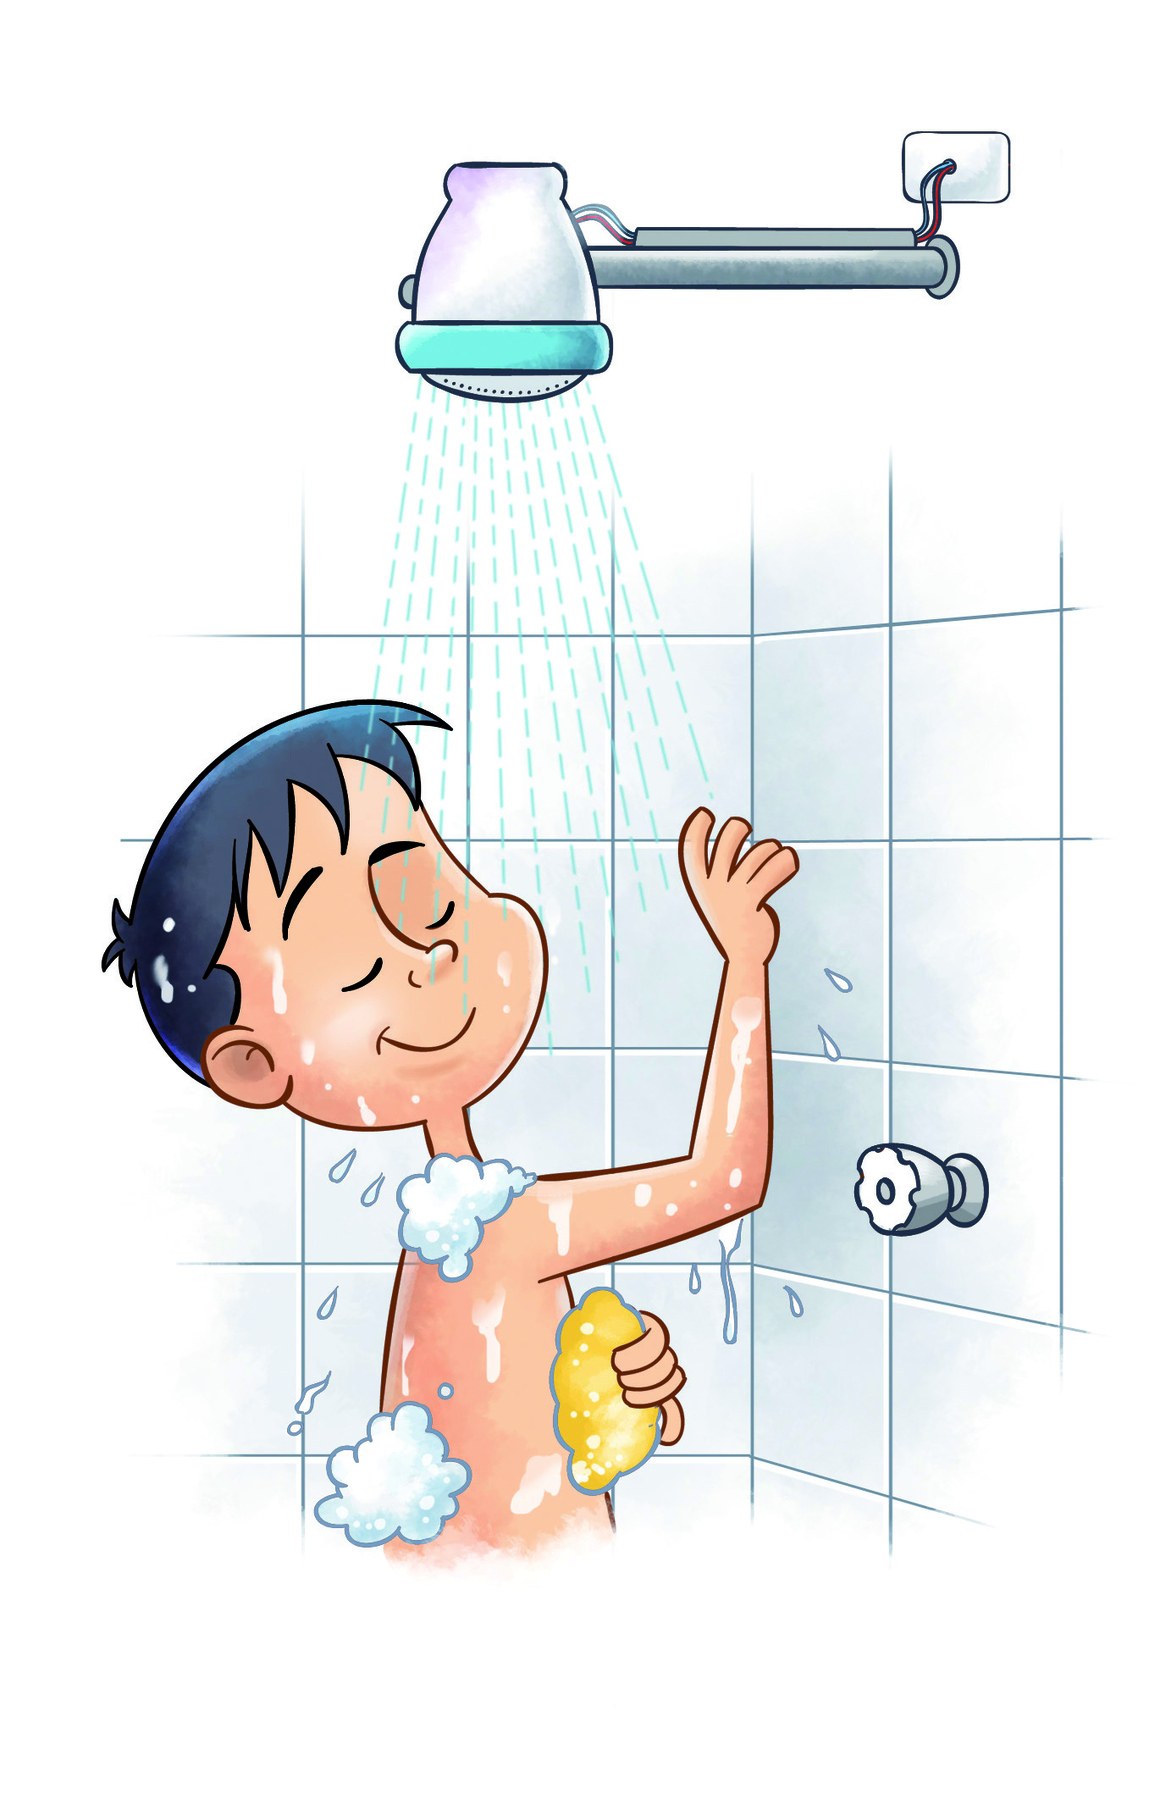 Ilustração: Menino branco de cabelo preto está em um banheiro debaixo do chuveiro se ensaboando. Ele passa a bucha pelo corpo, que tem marcas de espuma.